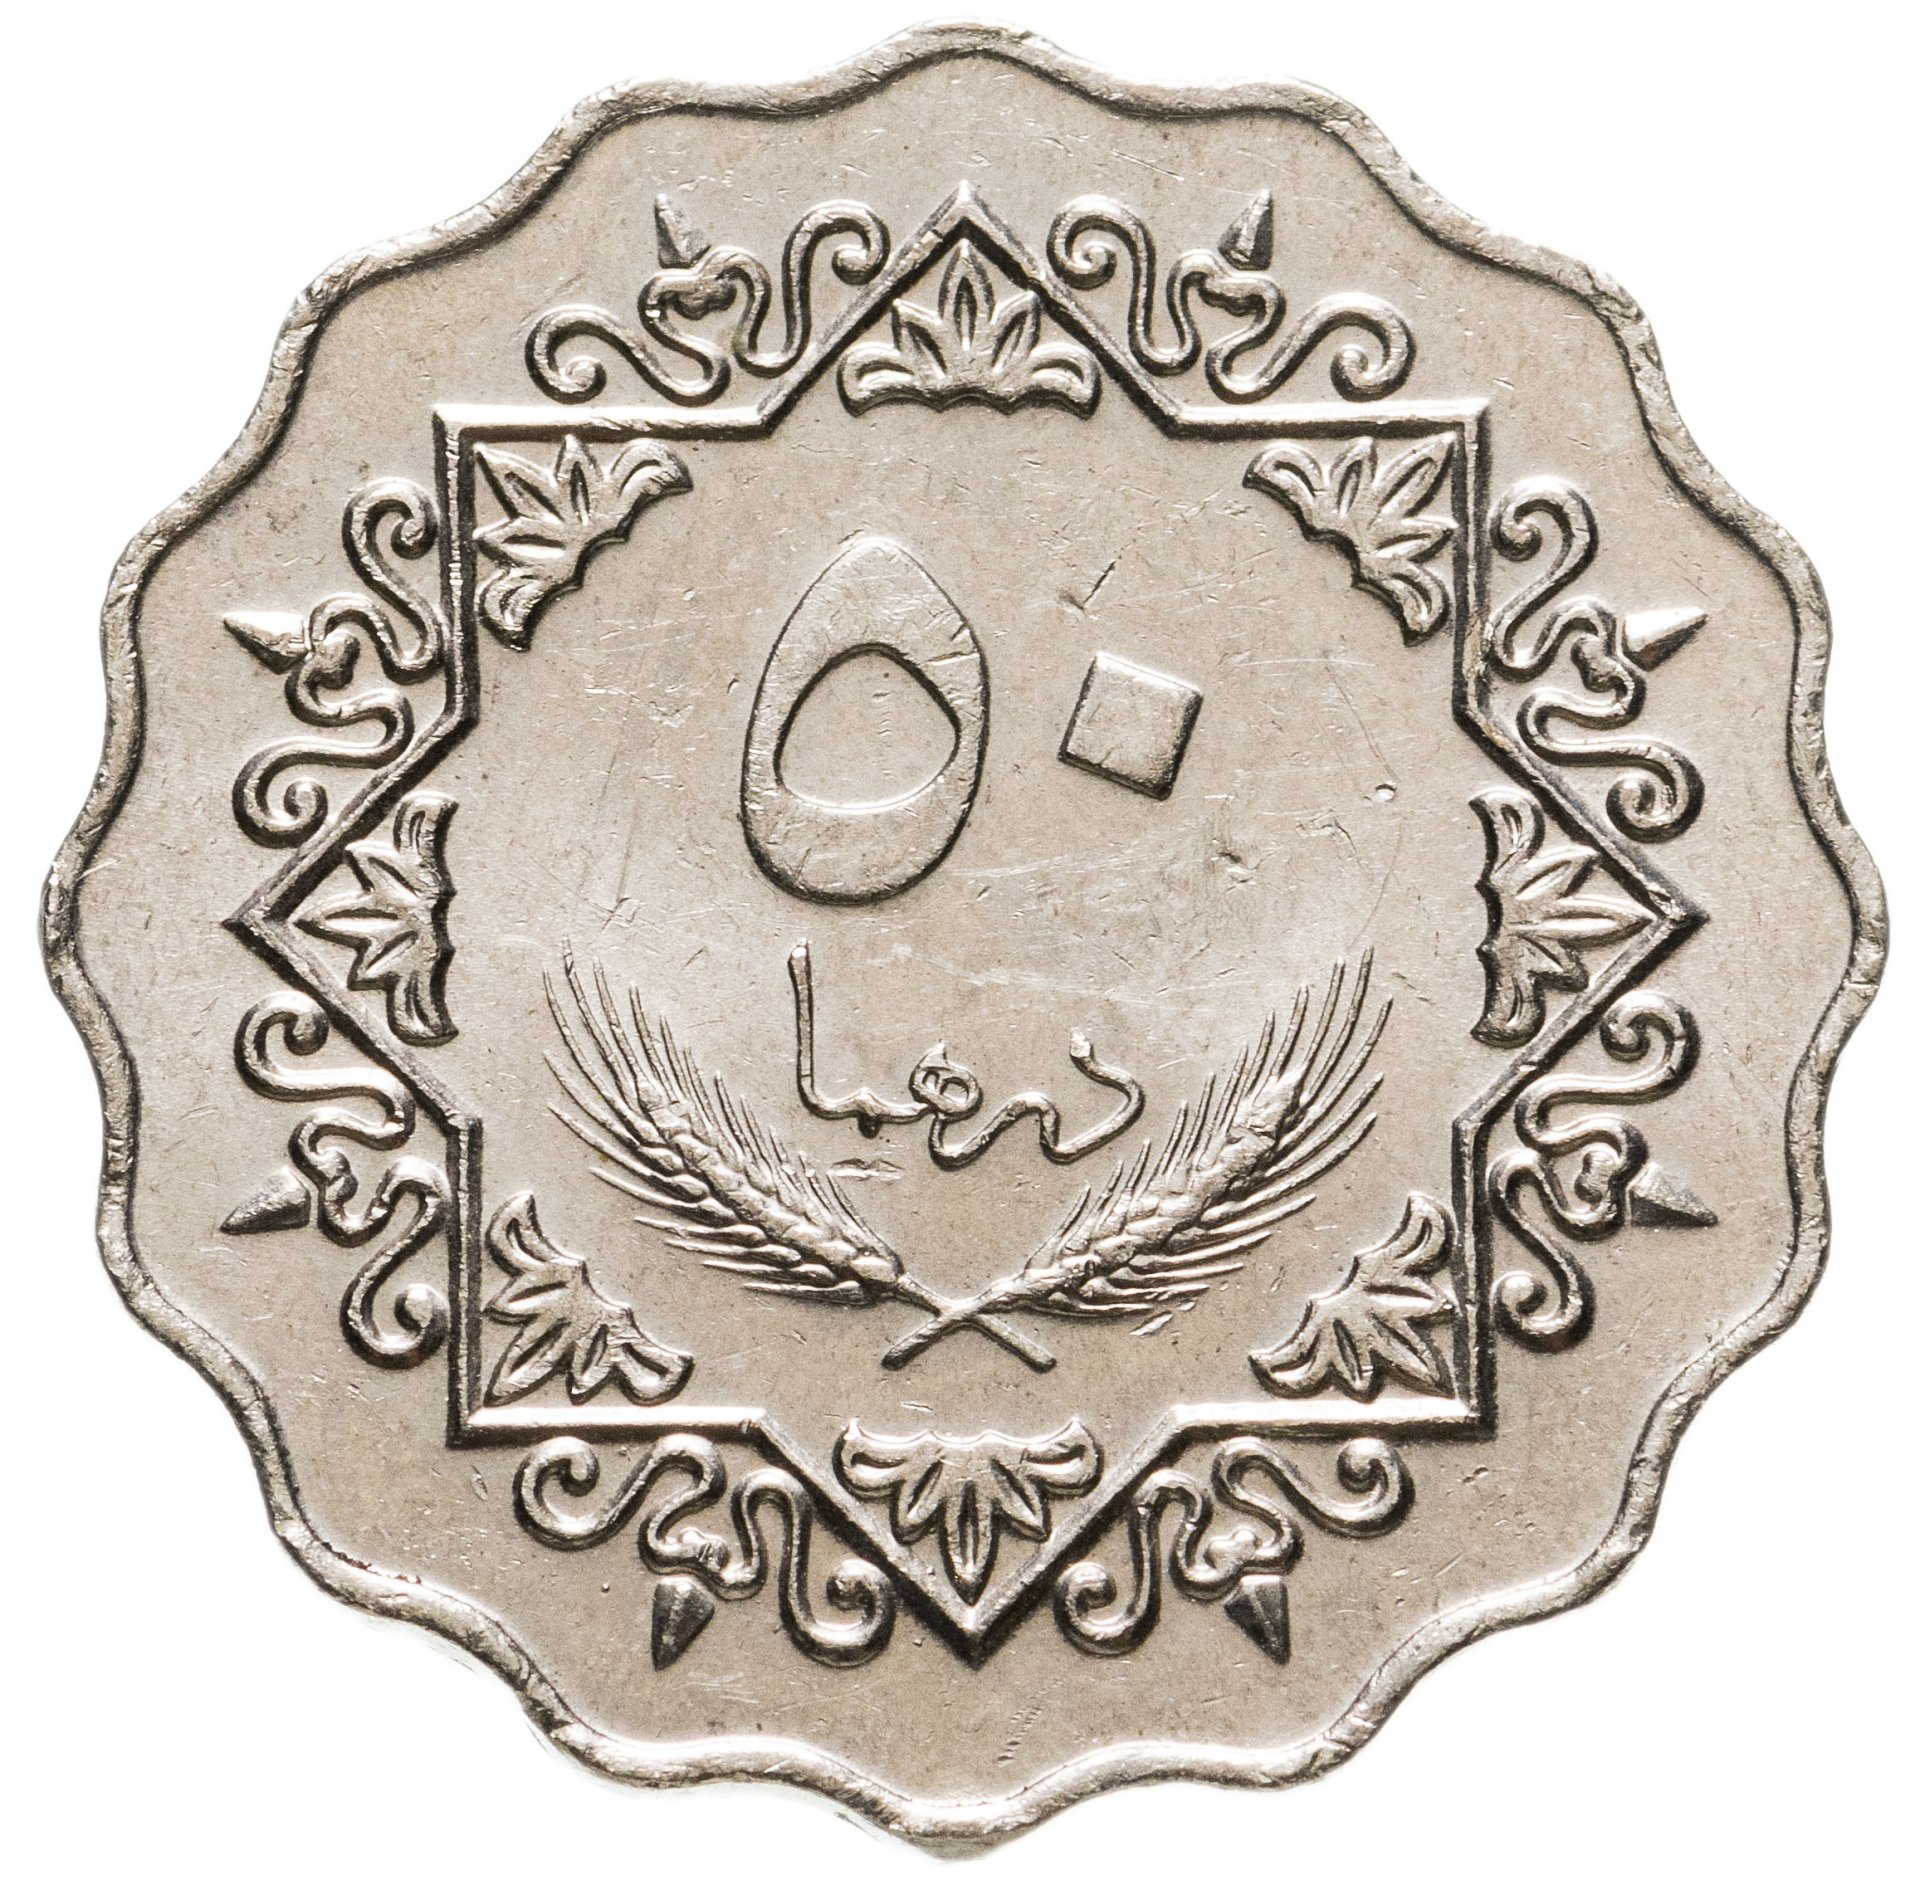 Ливия 50 дирхамов 1979. Монета с арабской вязью 50. Монеты ливийской Джамахирии. Старинные арабские монеты. 24 дирхам